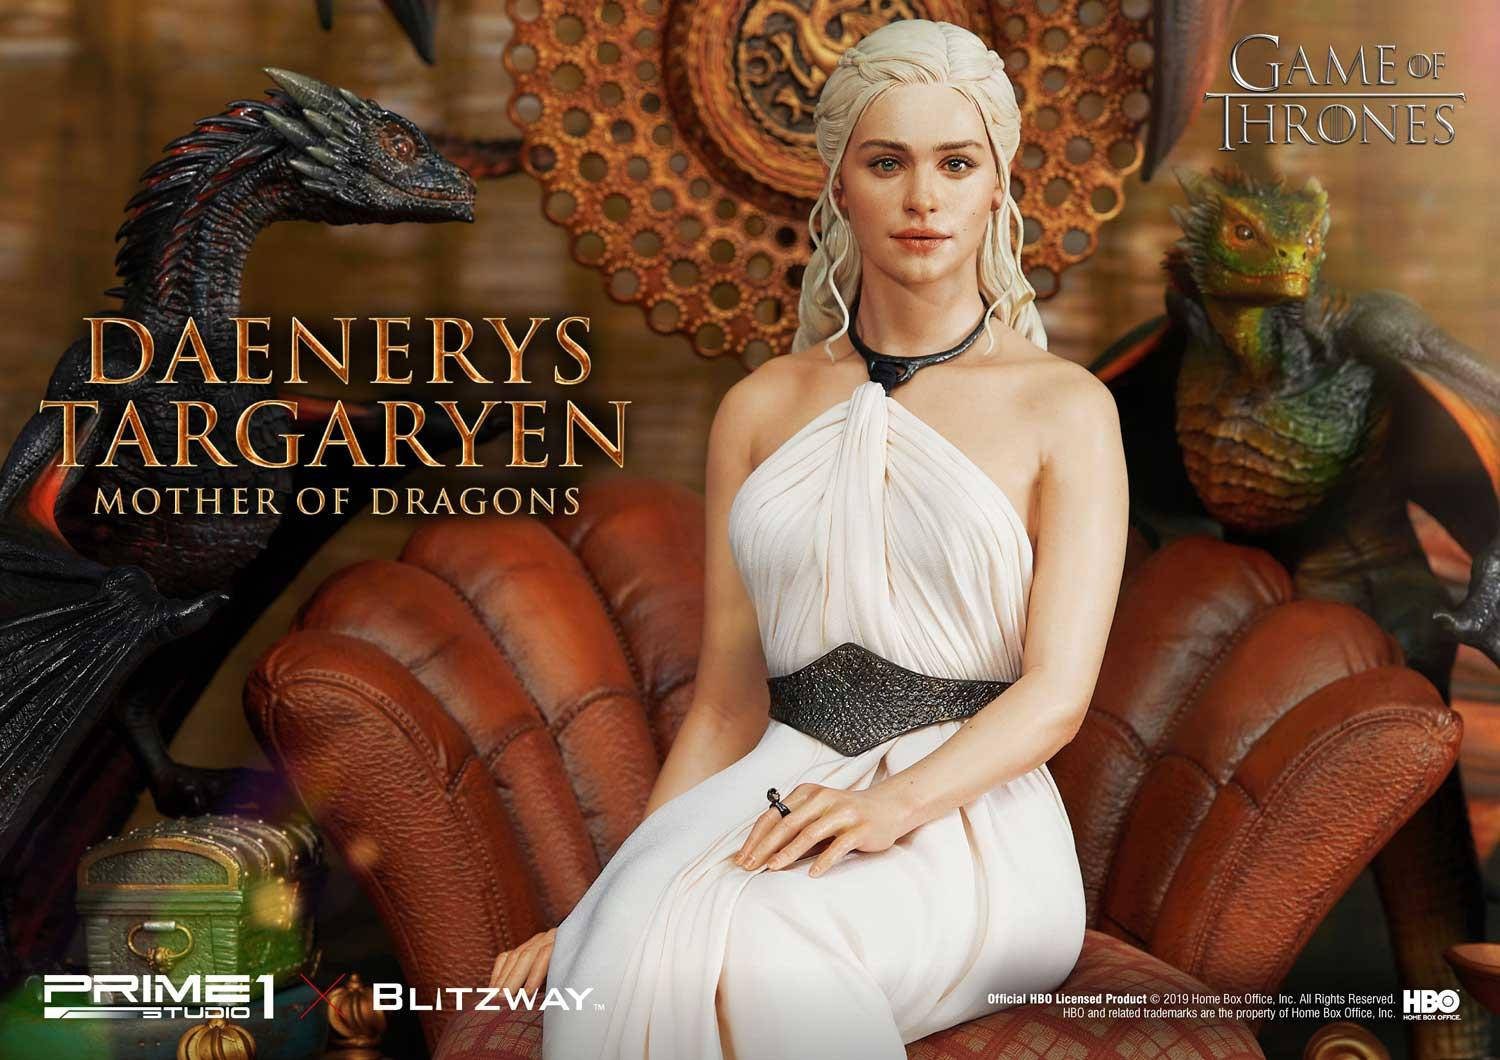 Immagine di Daenerys Targaryen, la statua di Blitzway e Prime 1 Studio